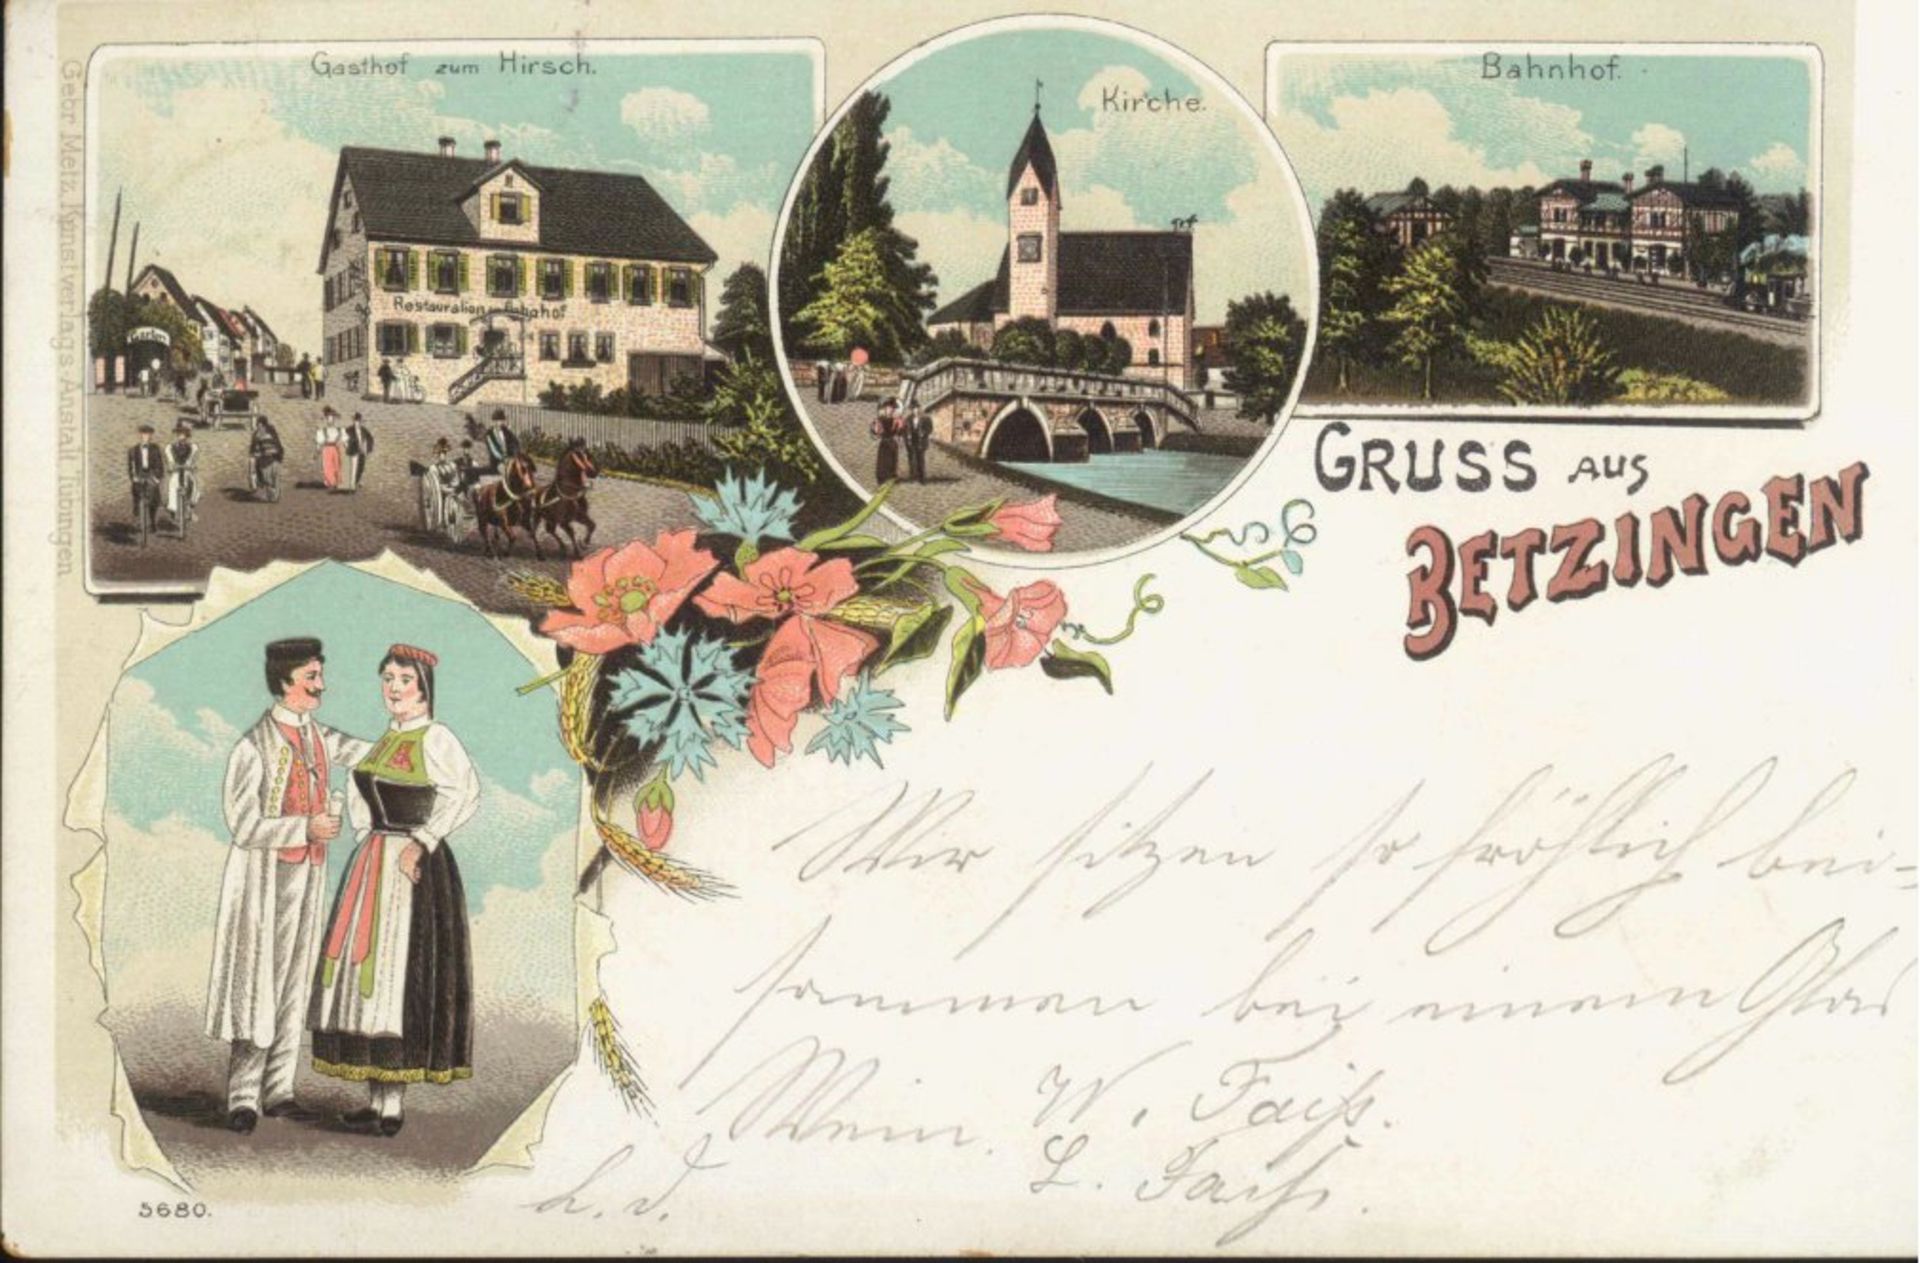 GRUSS AUS...BETZINGEN, Lithographie, gelaufen 1898nach Reutlingen, farbig. Erhaltung siehe